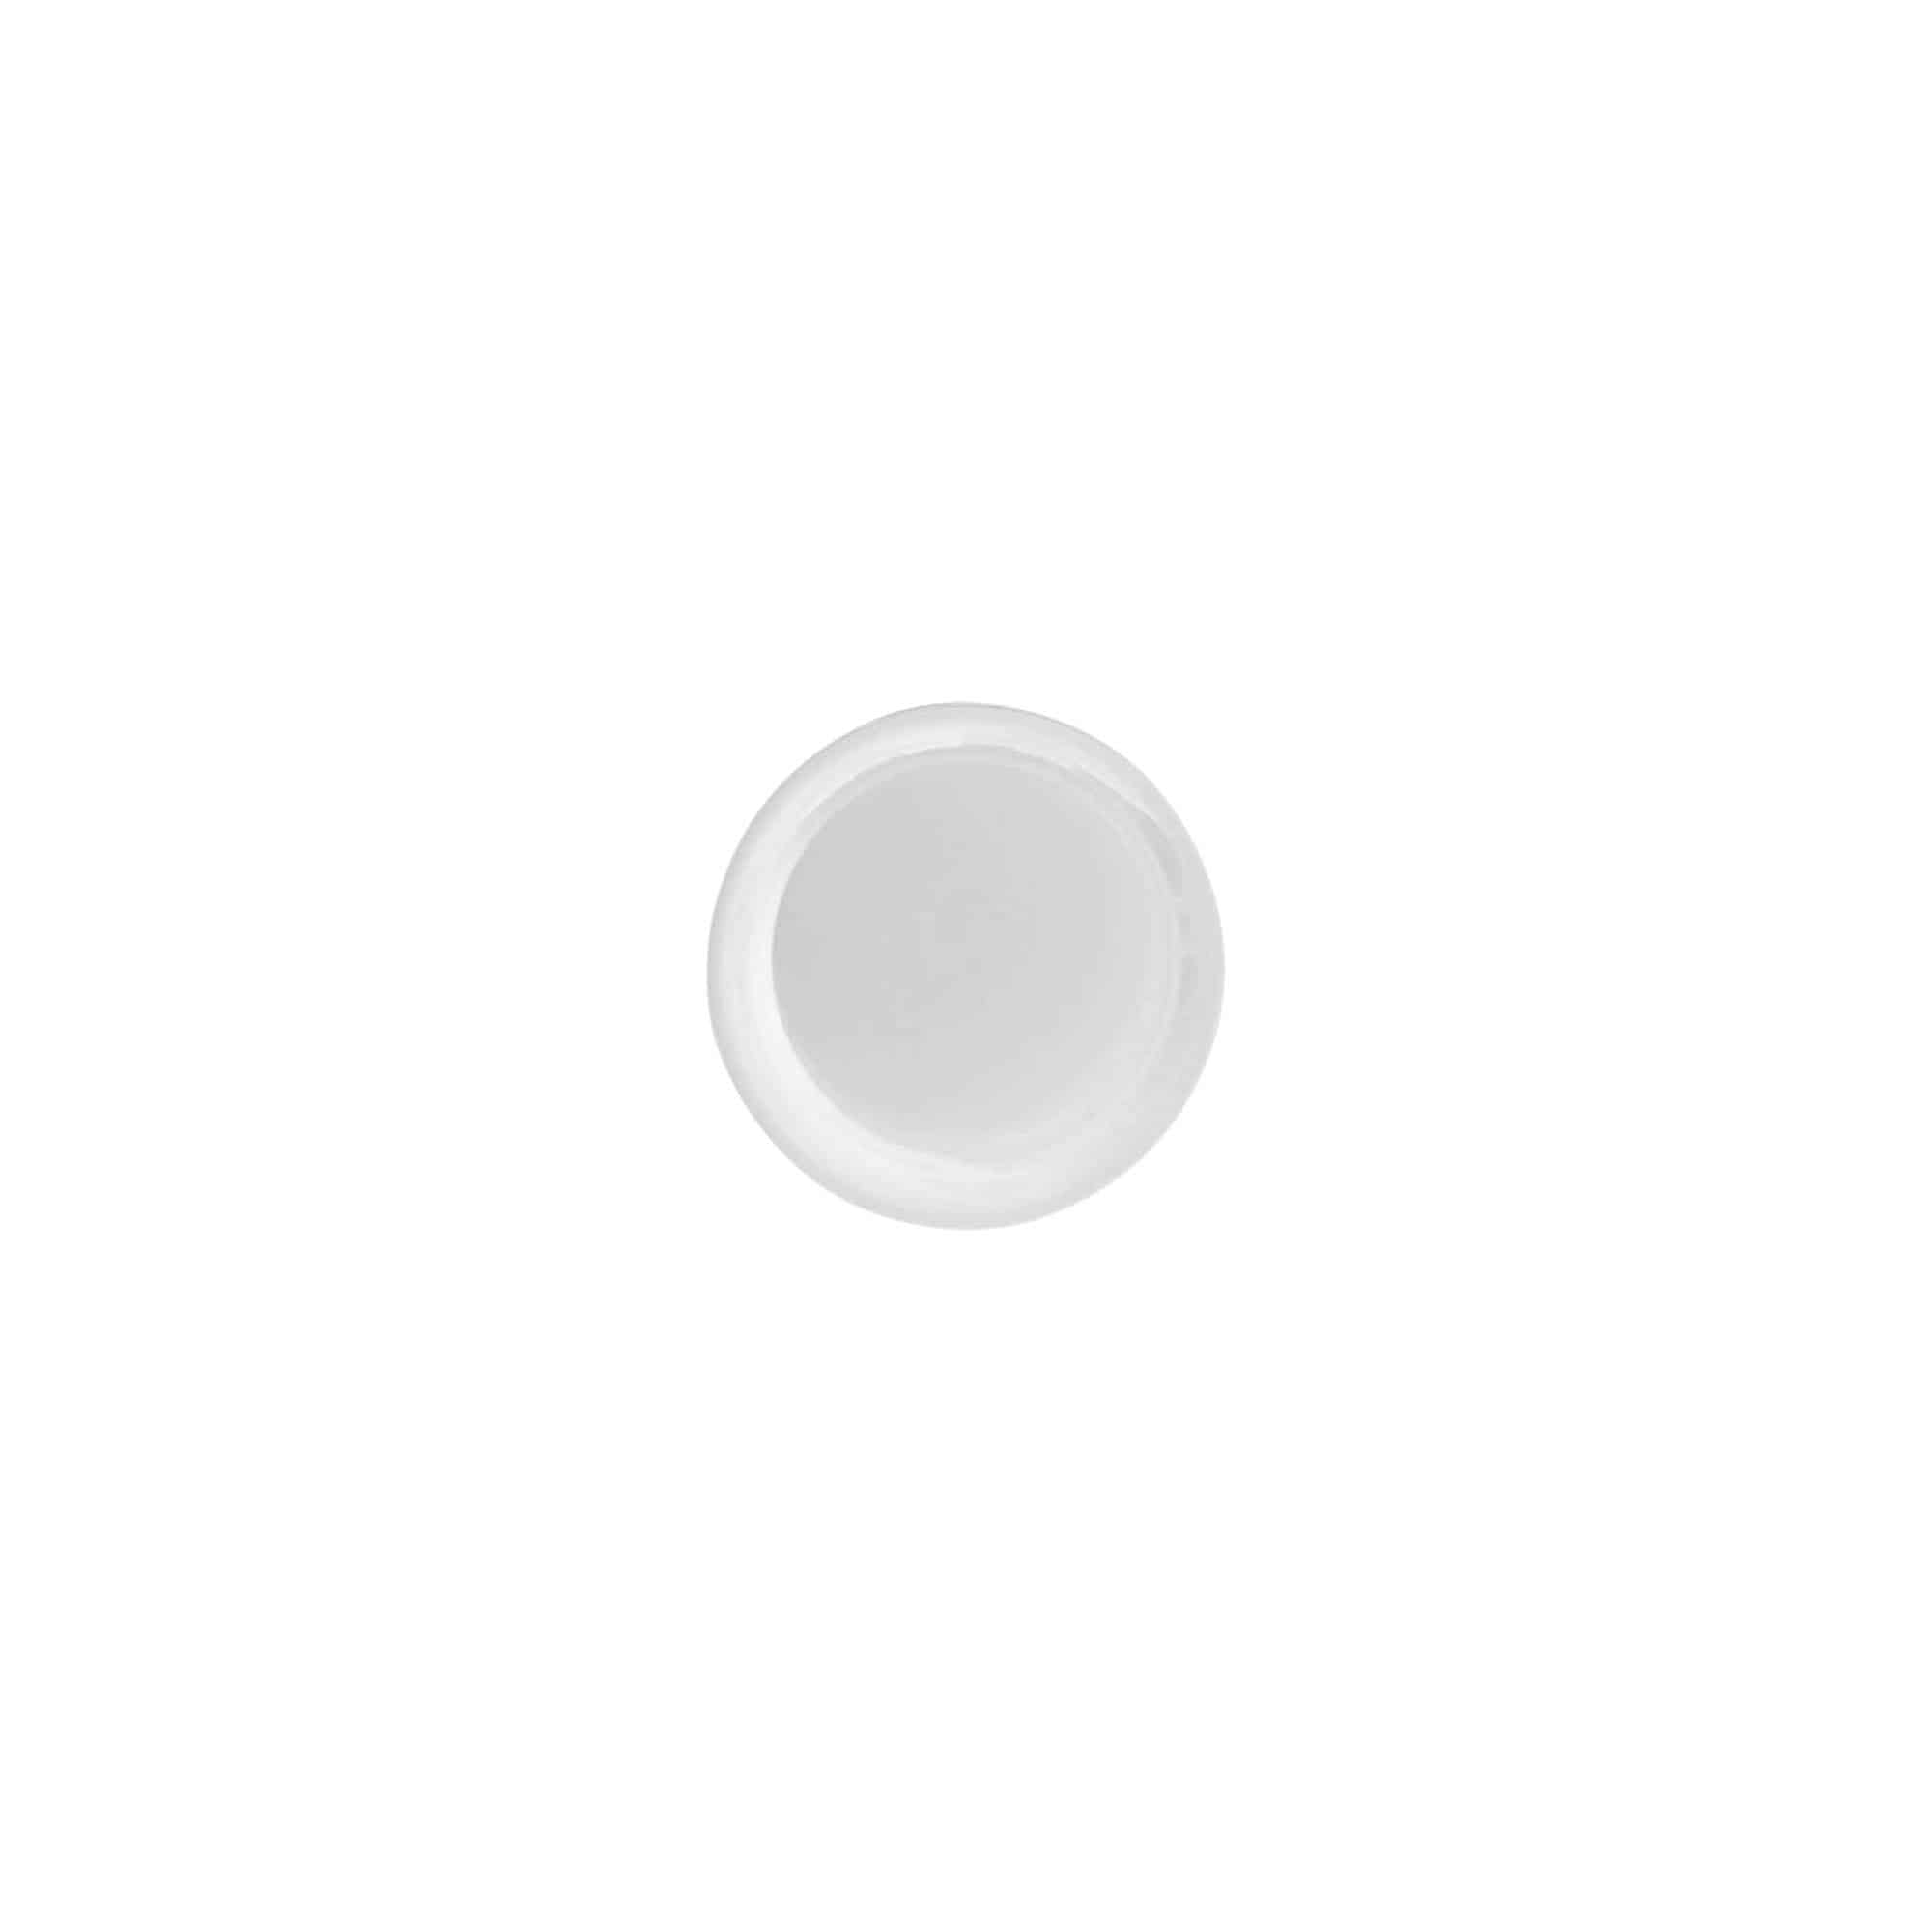 Šroubovací uzávěr s trhacím kroužkem, plast PE, bílý, pro ústí: DIN 18